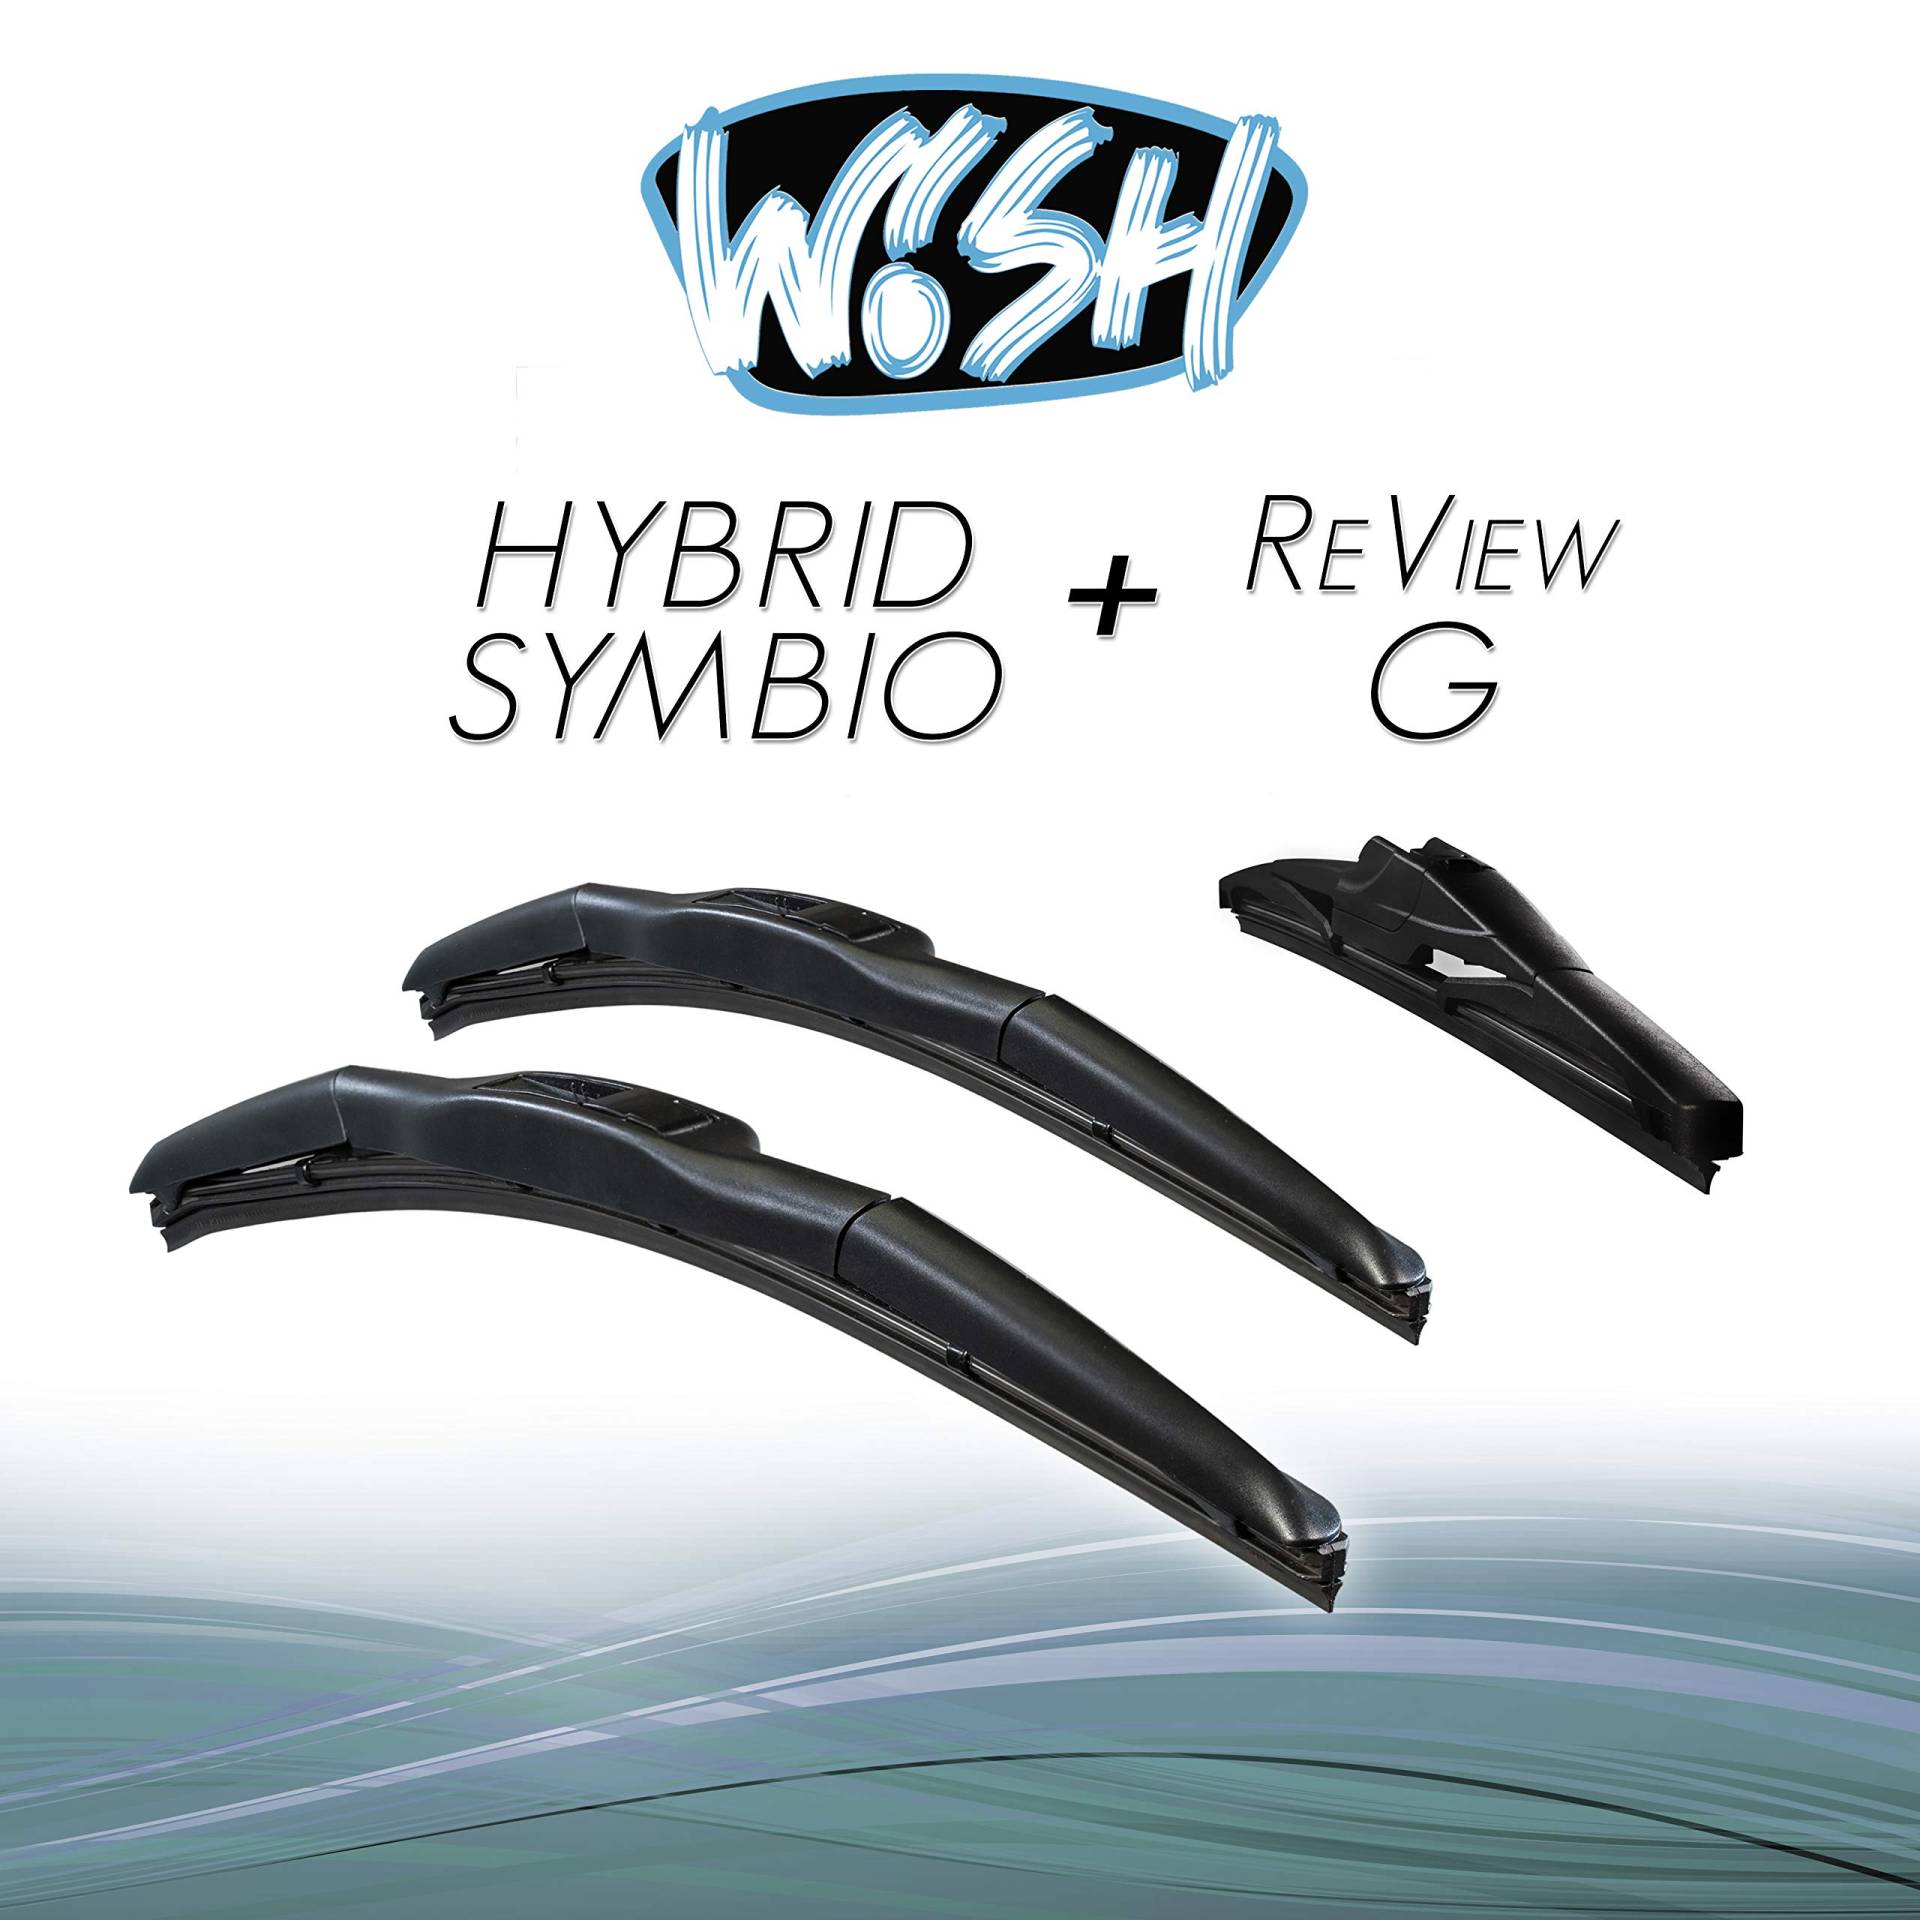 Wish® Hybrid Symbio Satz Front + Heck Scheibenwischer Länge: 24" 600mm / 20" 500mm / 10" 250mm Wischblätter Vorne und Hinten Hybrid-Scheibenwischer + Review G HS24.20.10RG von Wish